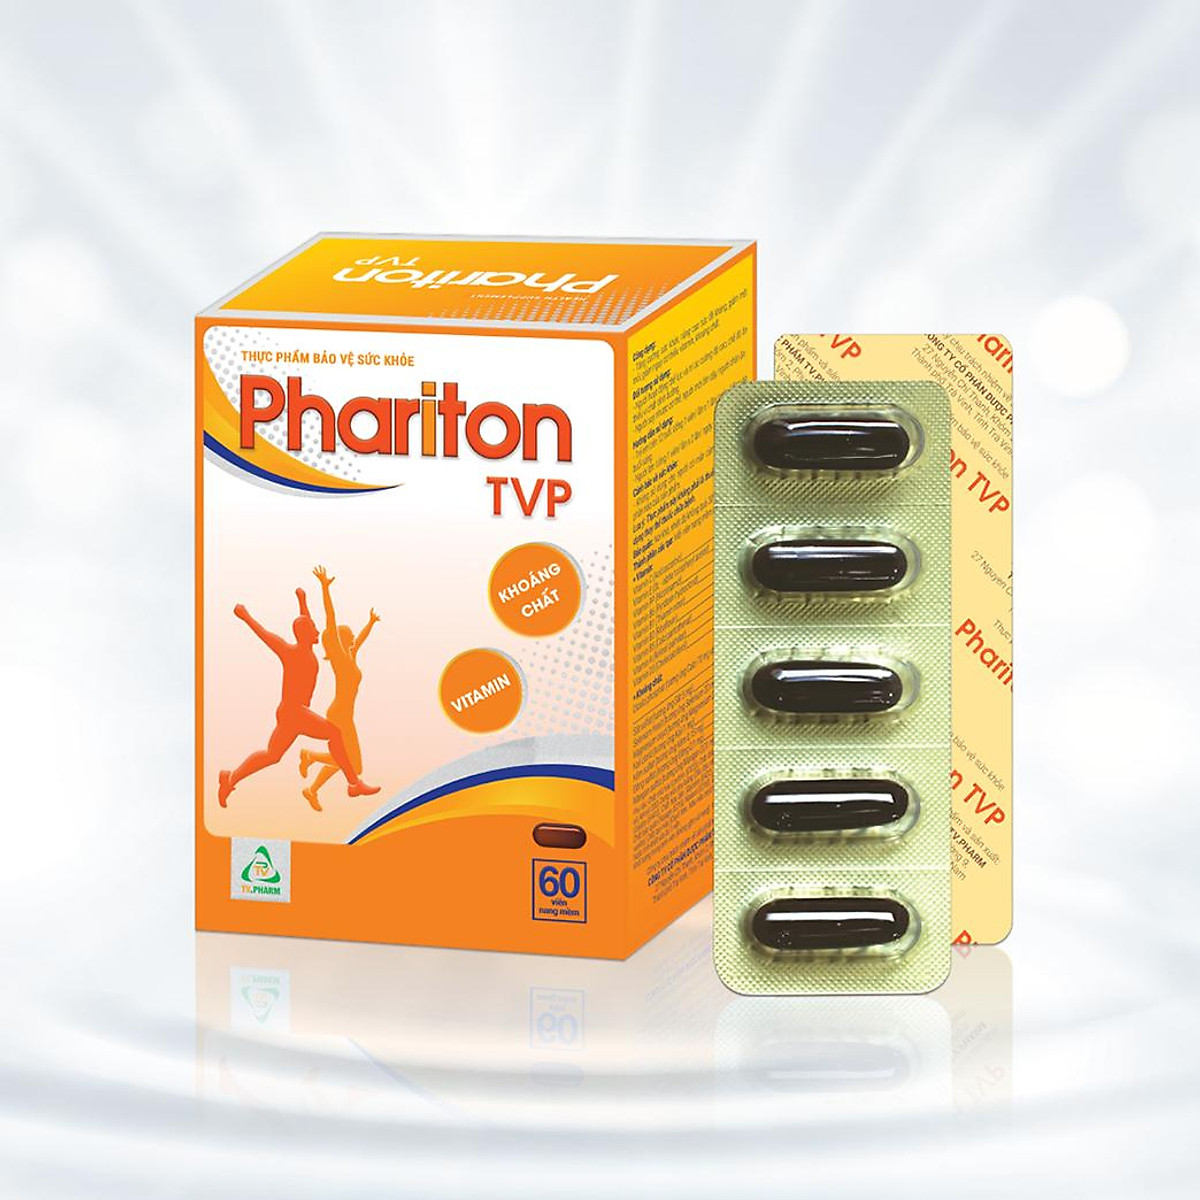 Thực phẩm bảo vệ sức khỏe PHARITON TVP - Bổ sung Vitamin, Khoáng chất thiết yếu cho cơ thể